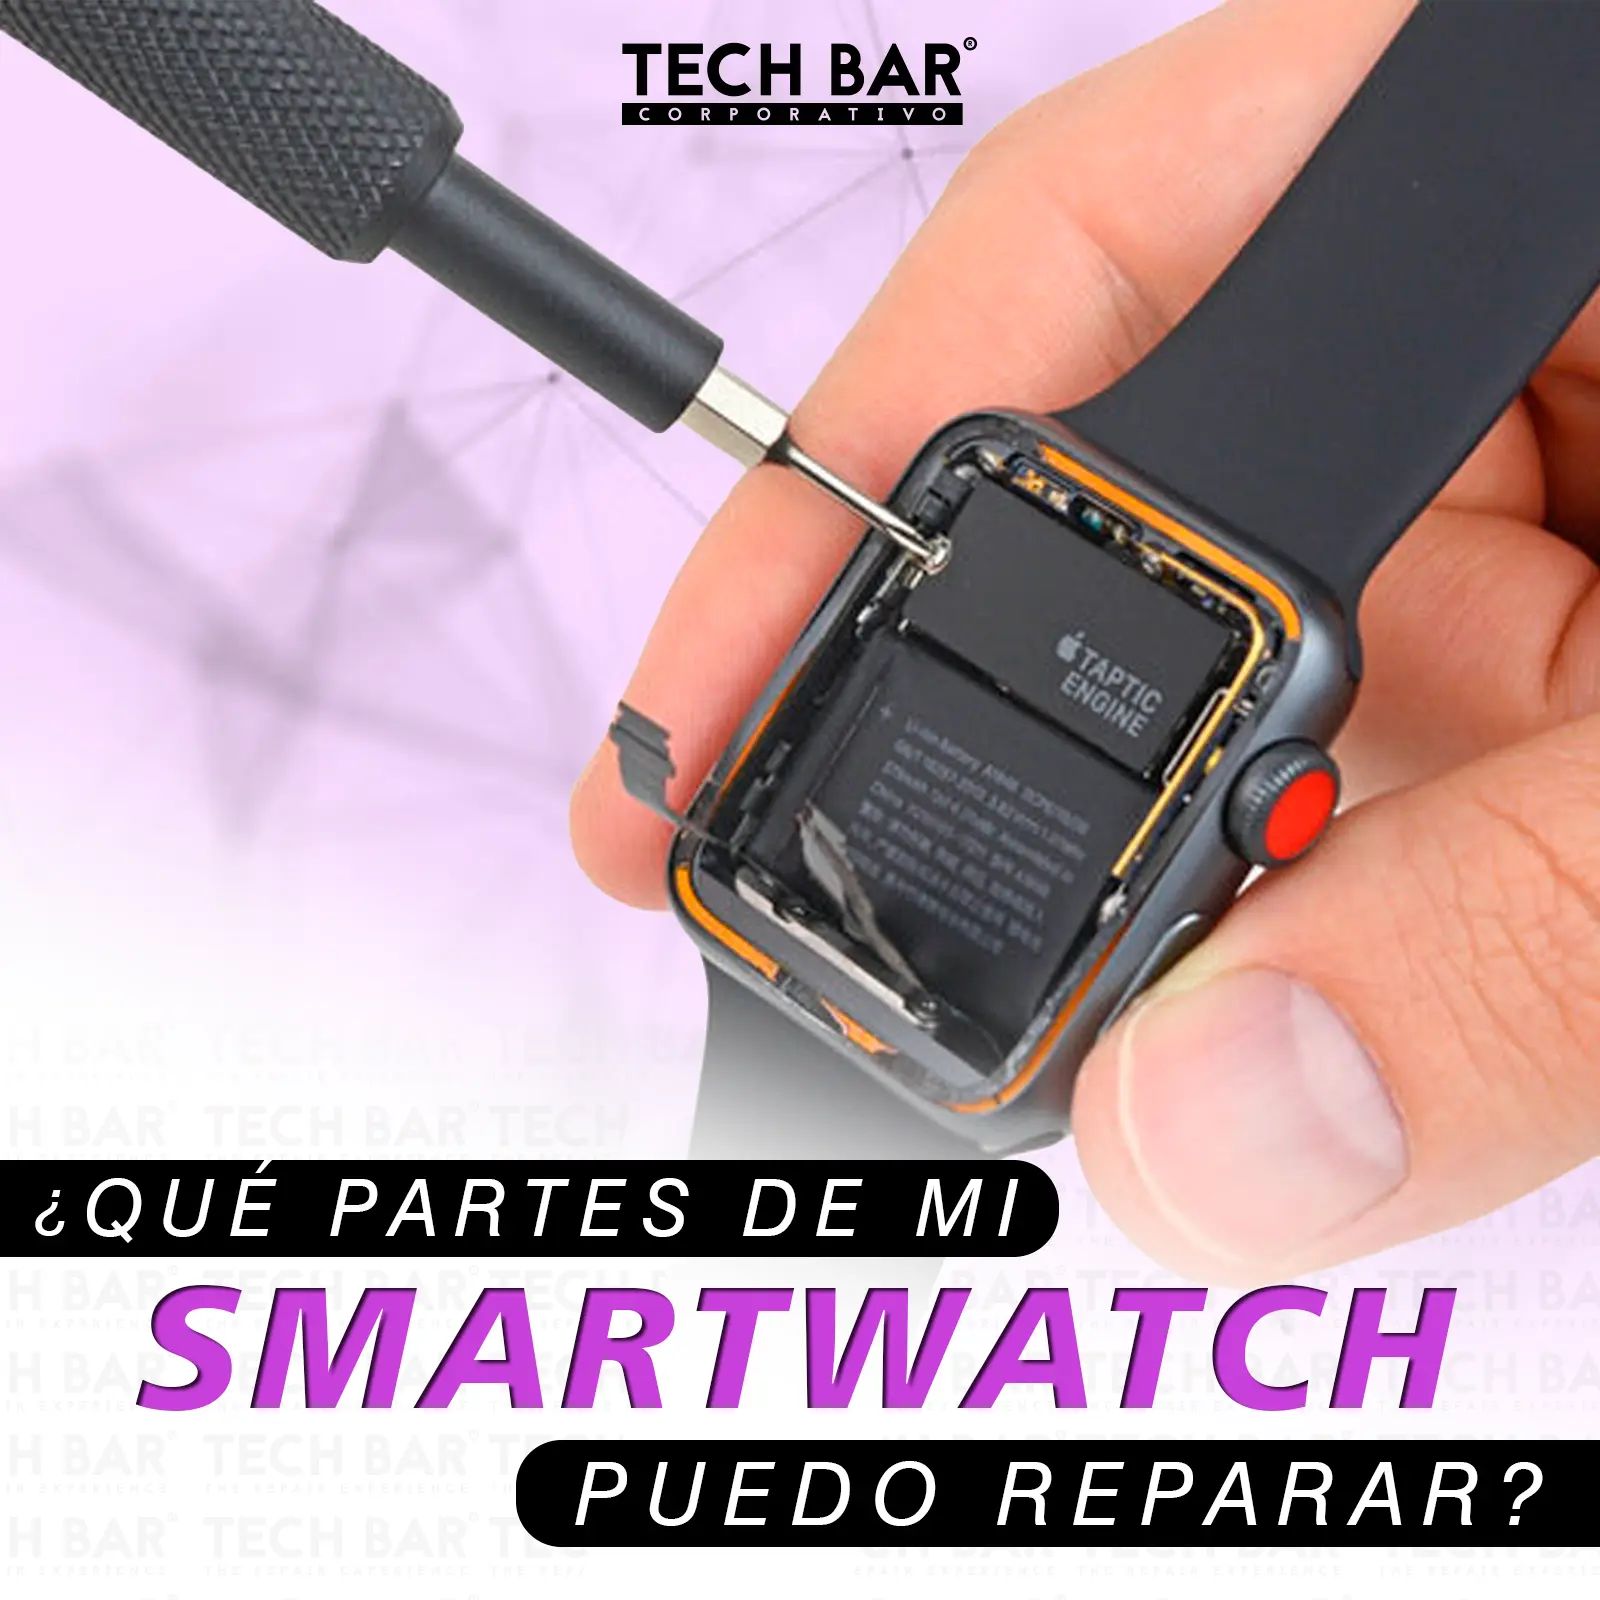 reparar pantalla smartwatch - Cómo quitar rayones de un reloj Swatch